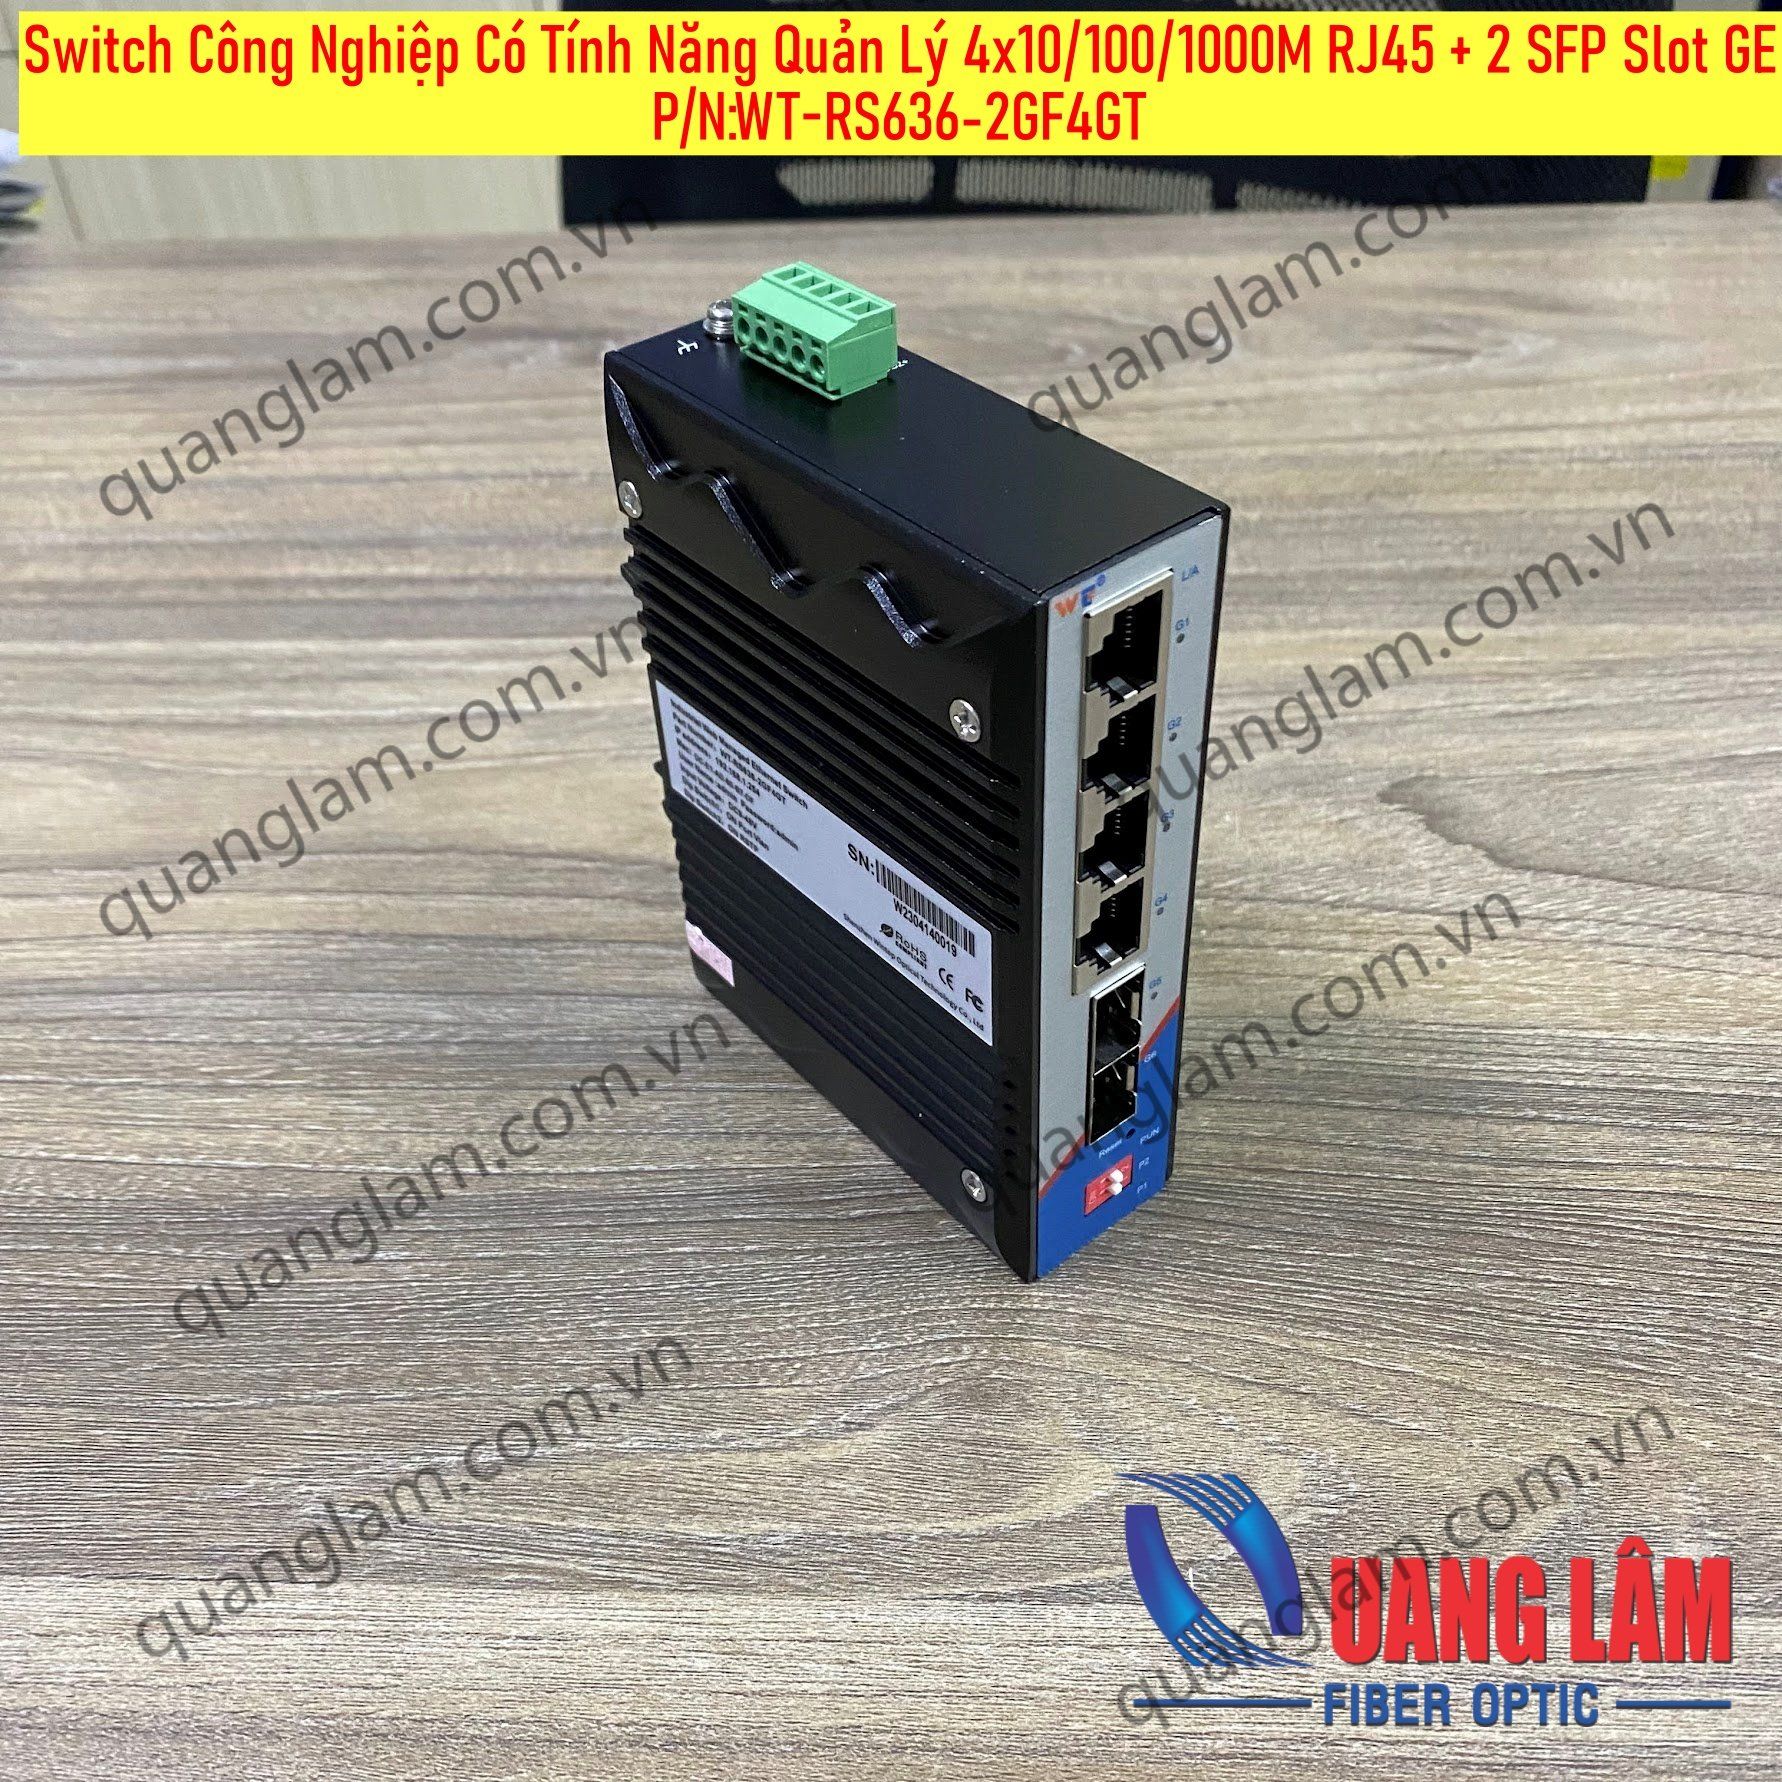 Switch công nghiệp có tính năng quản lý 4x10/100/1000M RJ45 + 2 SFP Slot GE, DIN Rail, Dual DC Power 9-48VDC, P/N: WT-RS636-2GF4GT